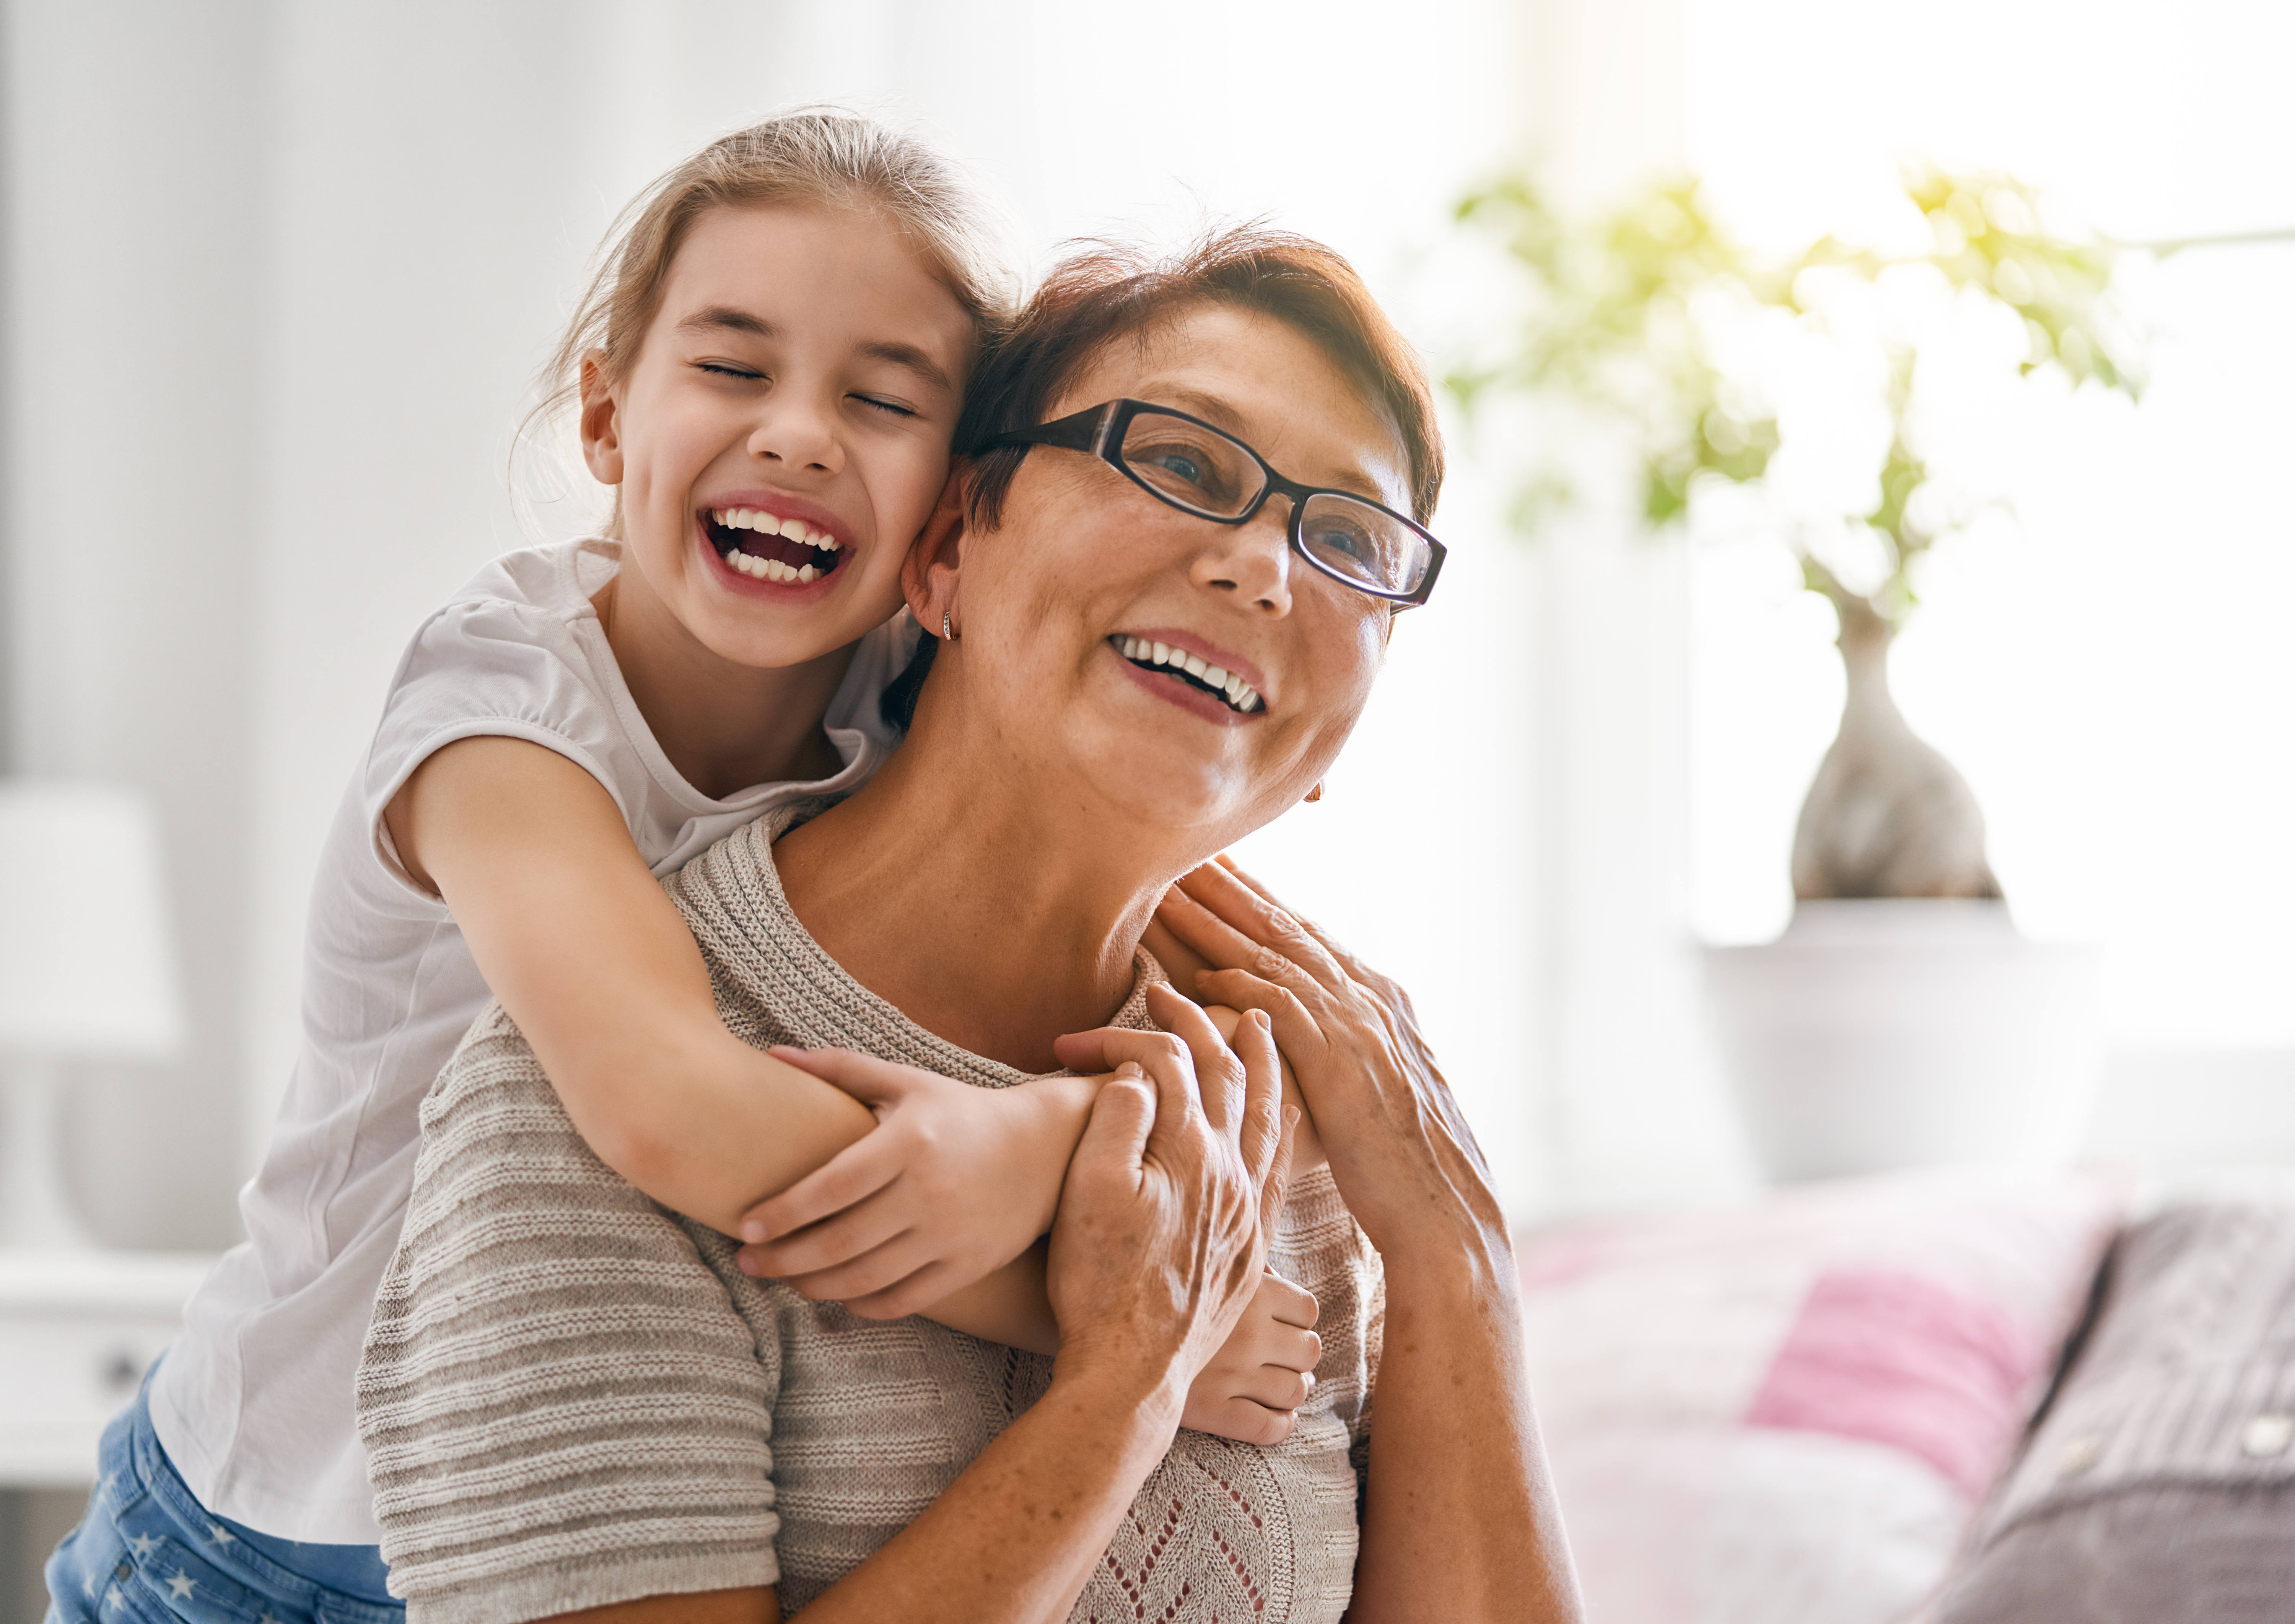 Ein kleines Mädchen und ihre Großmutter lächeln | Quelle: Shutterstock